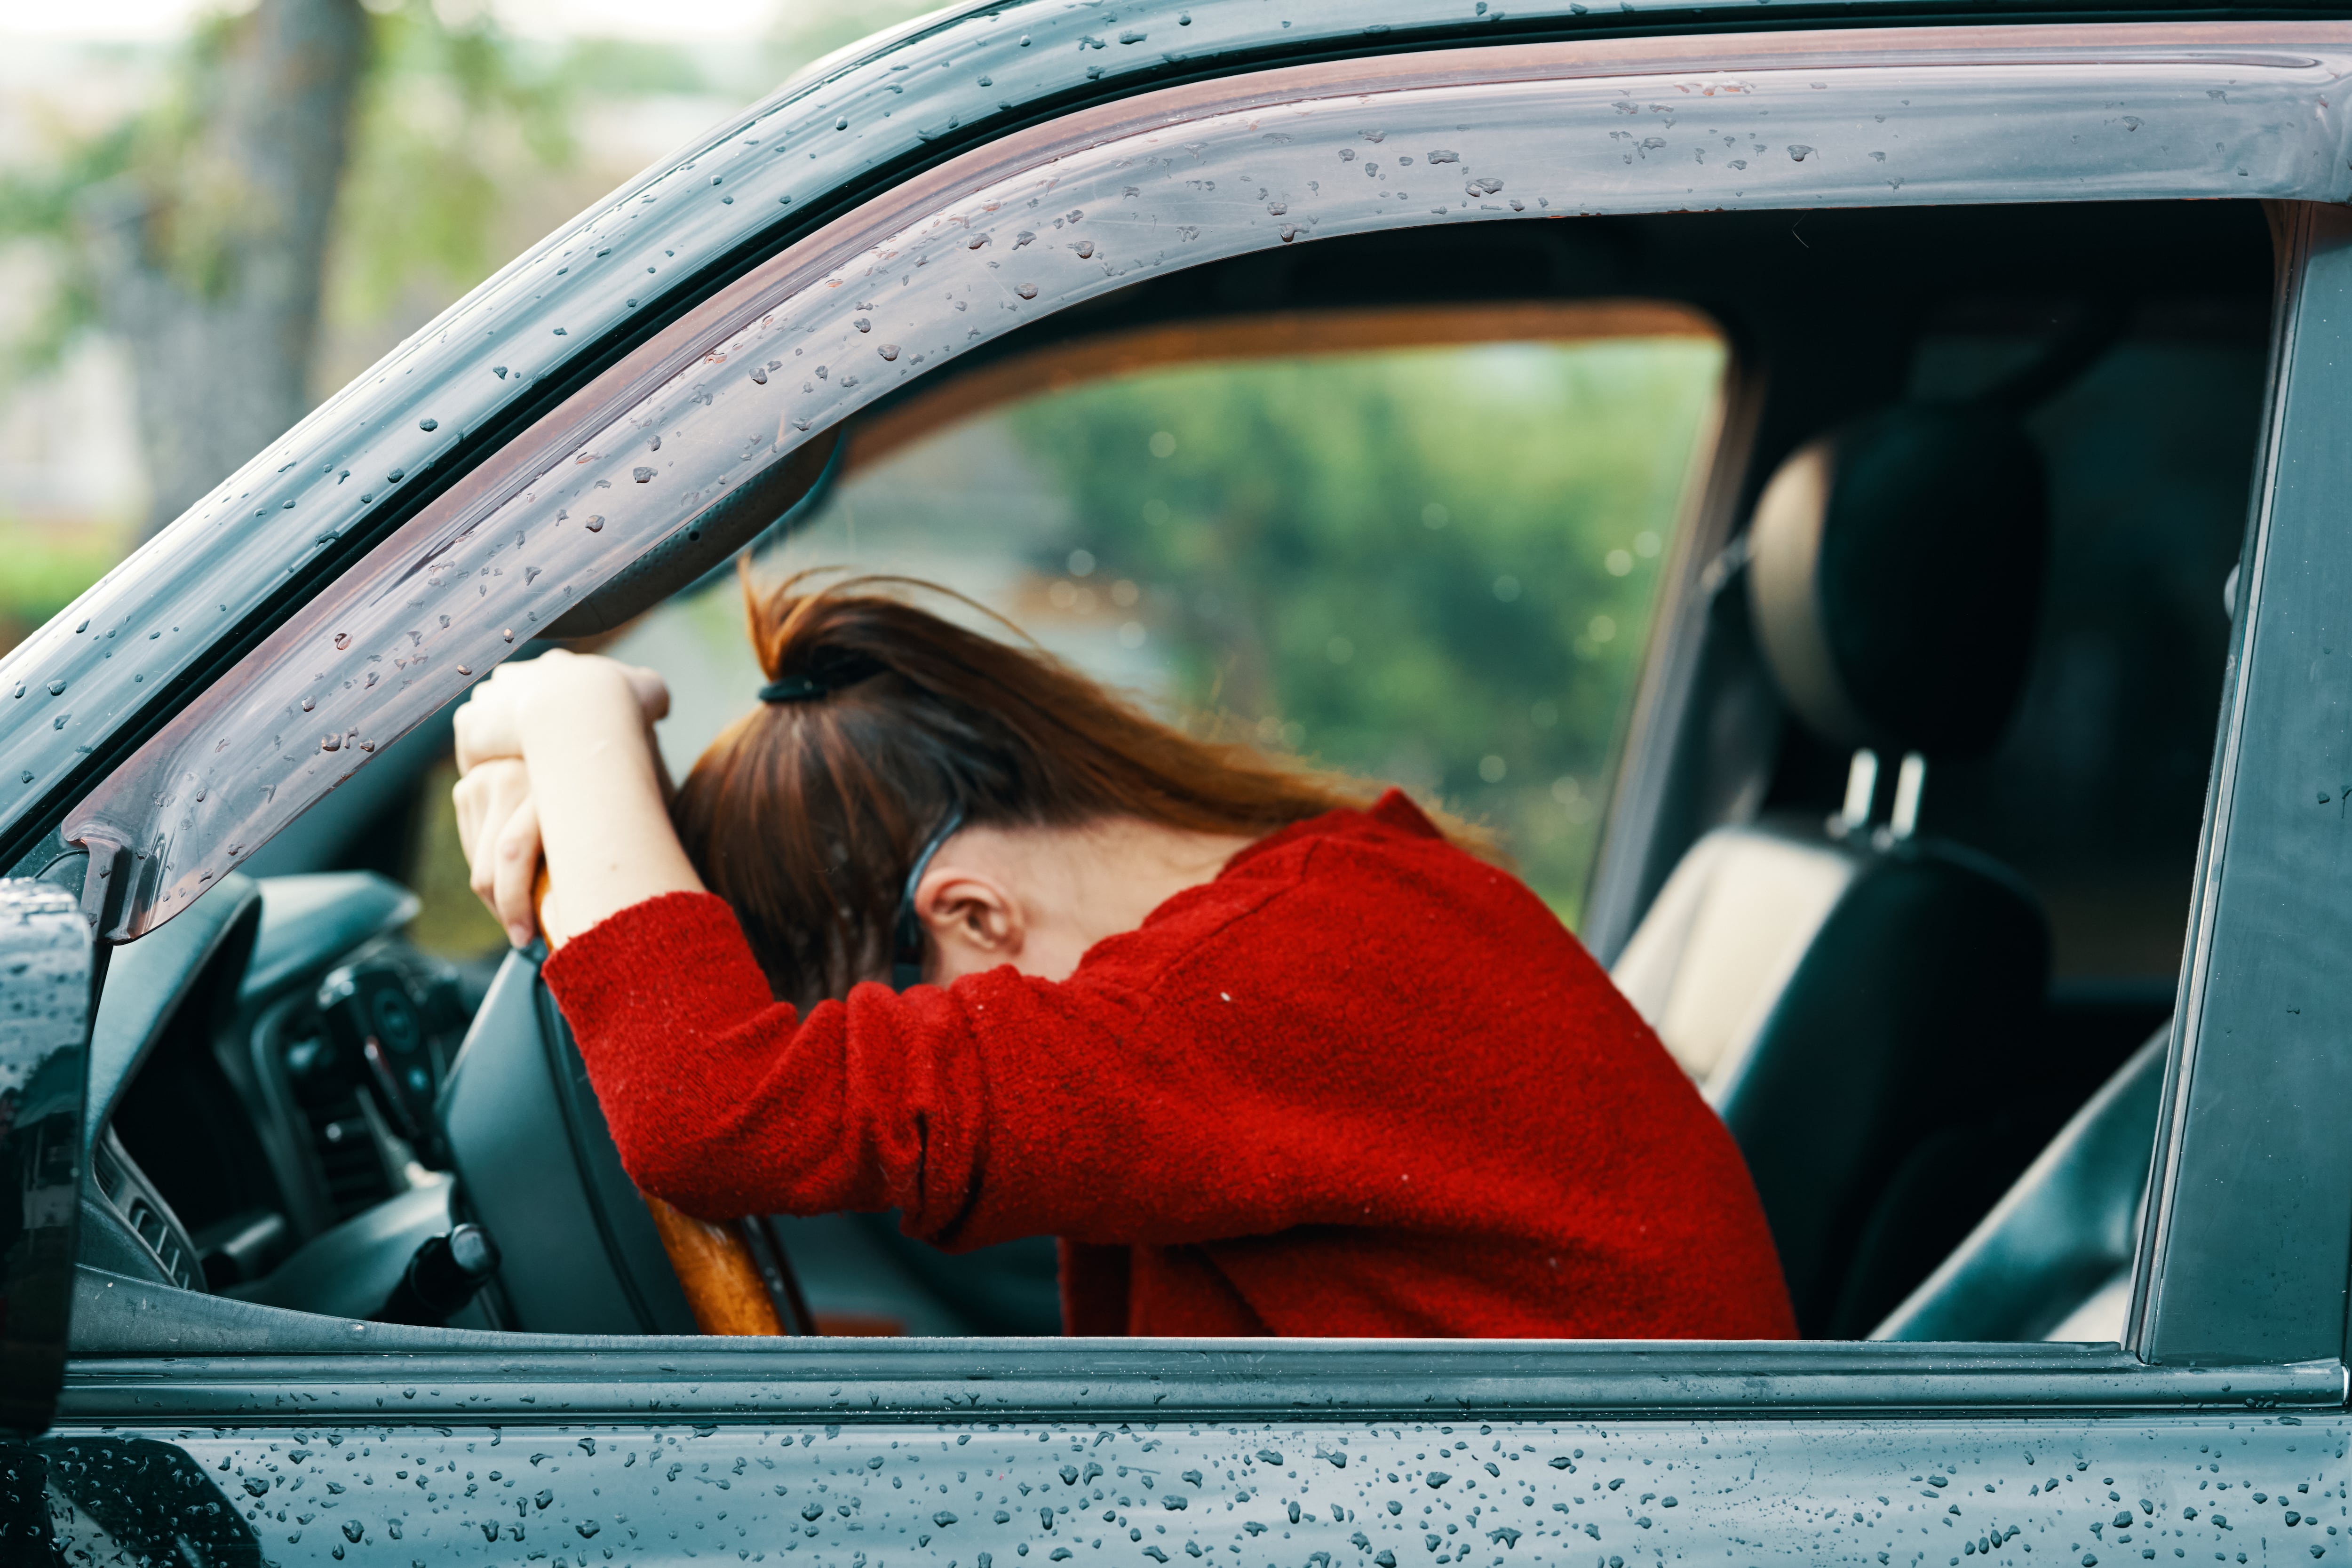 Momentos de mucho tráfico puede ser estresante para los conductores. (Foto: Shutterstock)